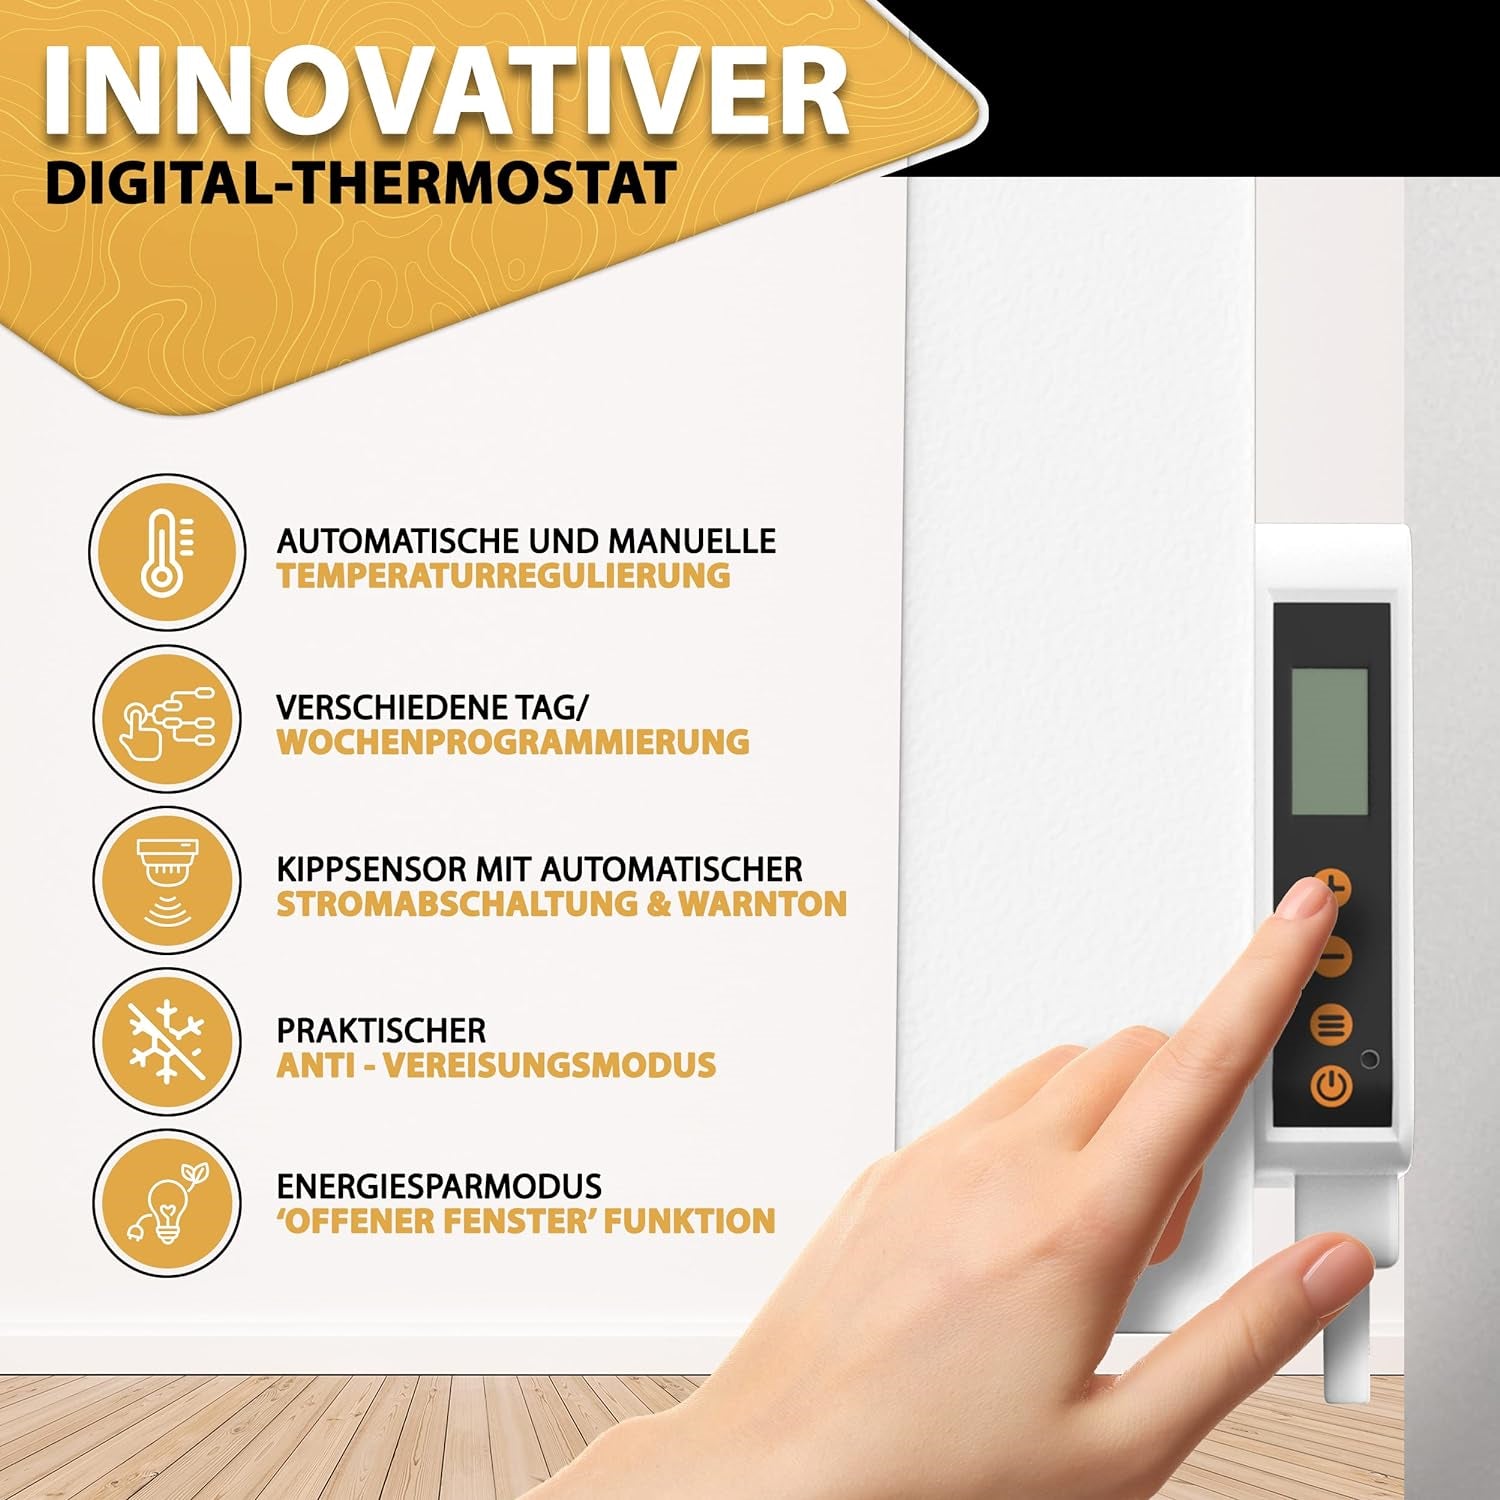 Hybrid Wand-Mobil Infrarotheizung mit Thermostat und Standfüssen